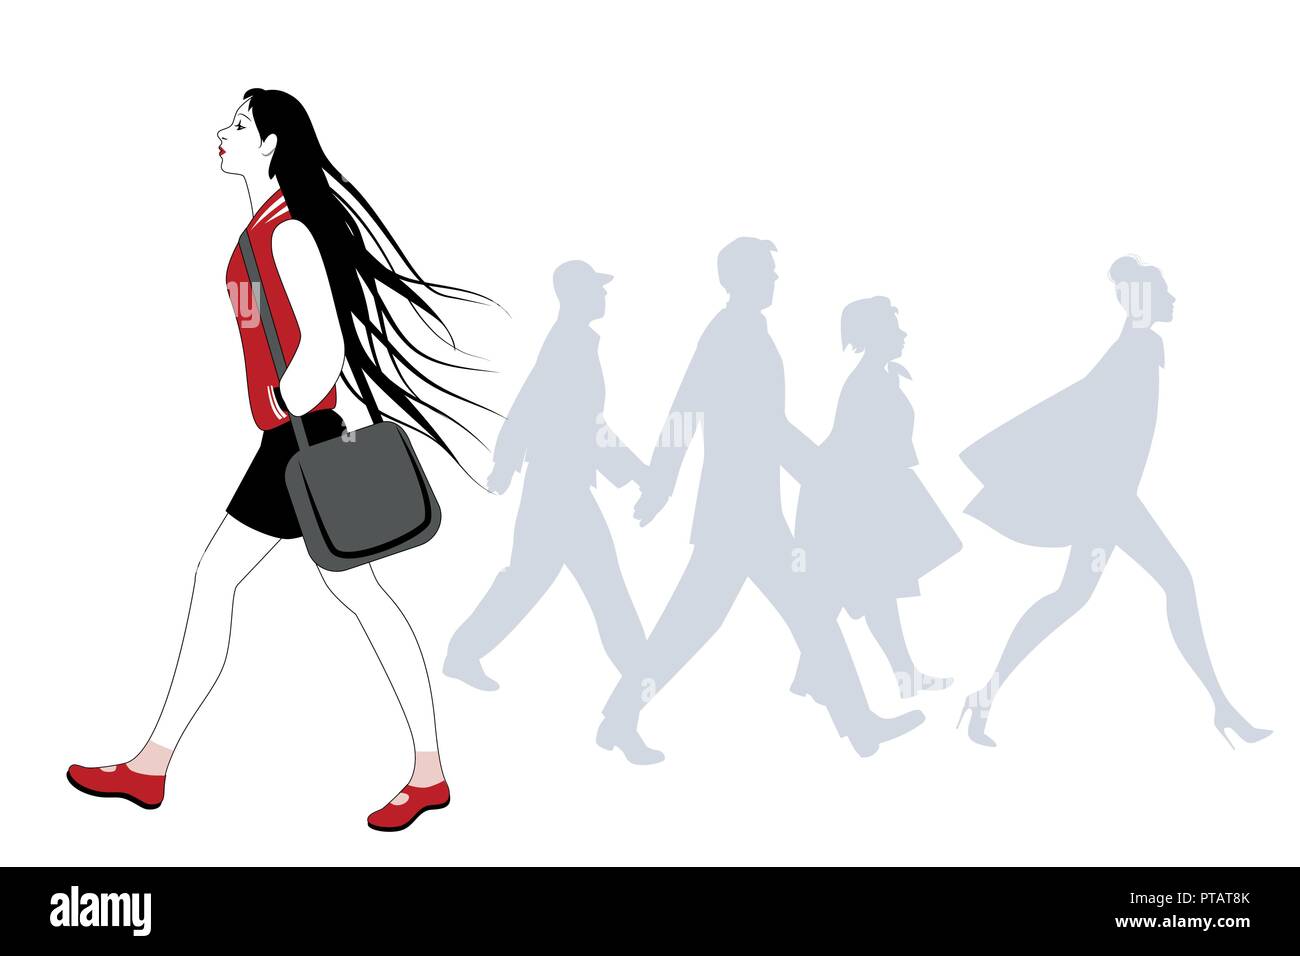 Jeune fille avec de longs cheveux dans le vent marche sur la rue. Silhouettes de personnes dans l'arrière-plan Illustration de Vecteur